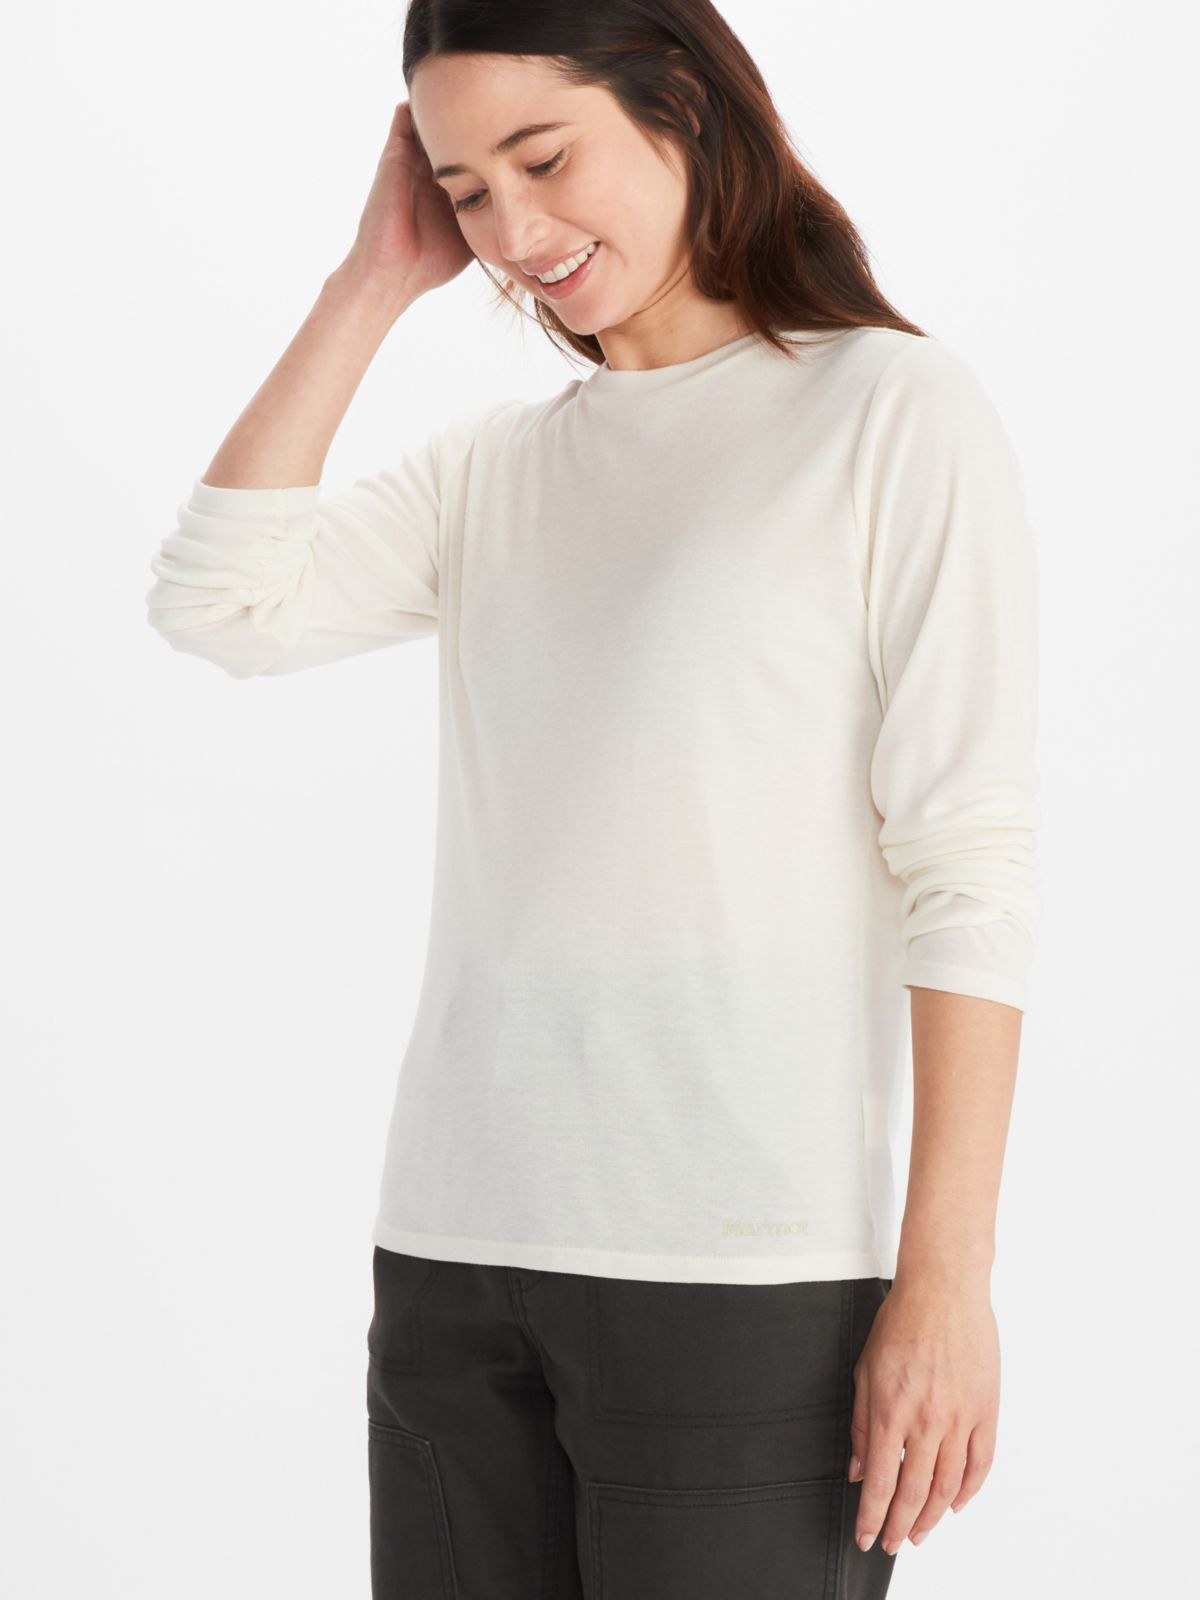 Model wearing Marmot women's long sleeve sweatshirt in off-white